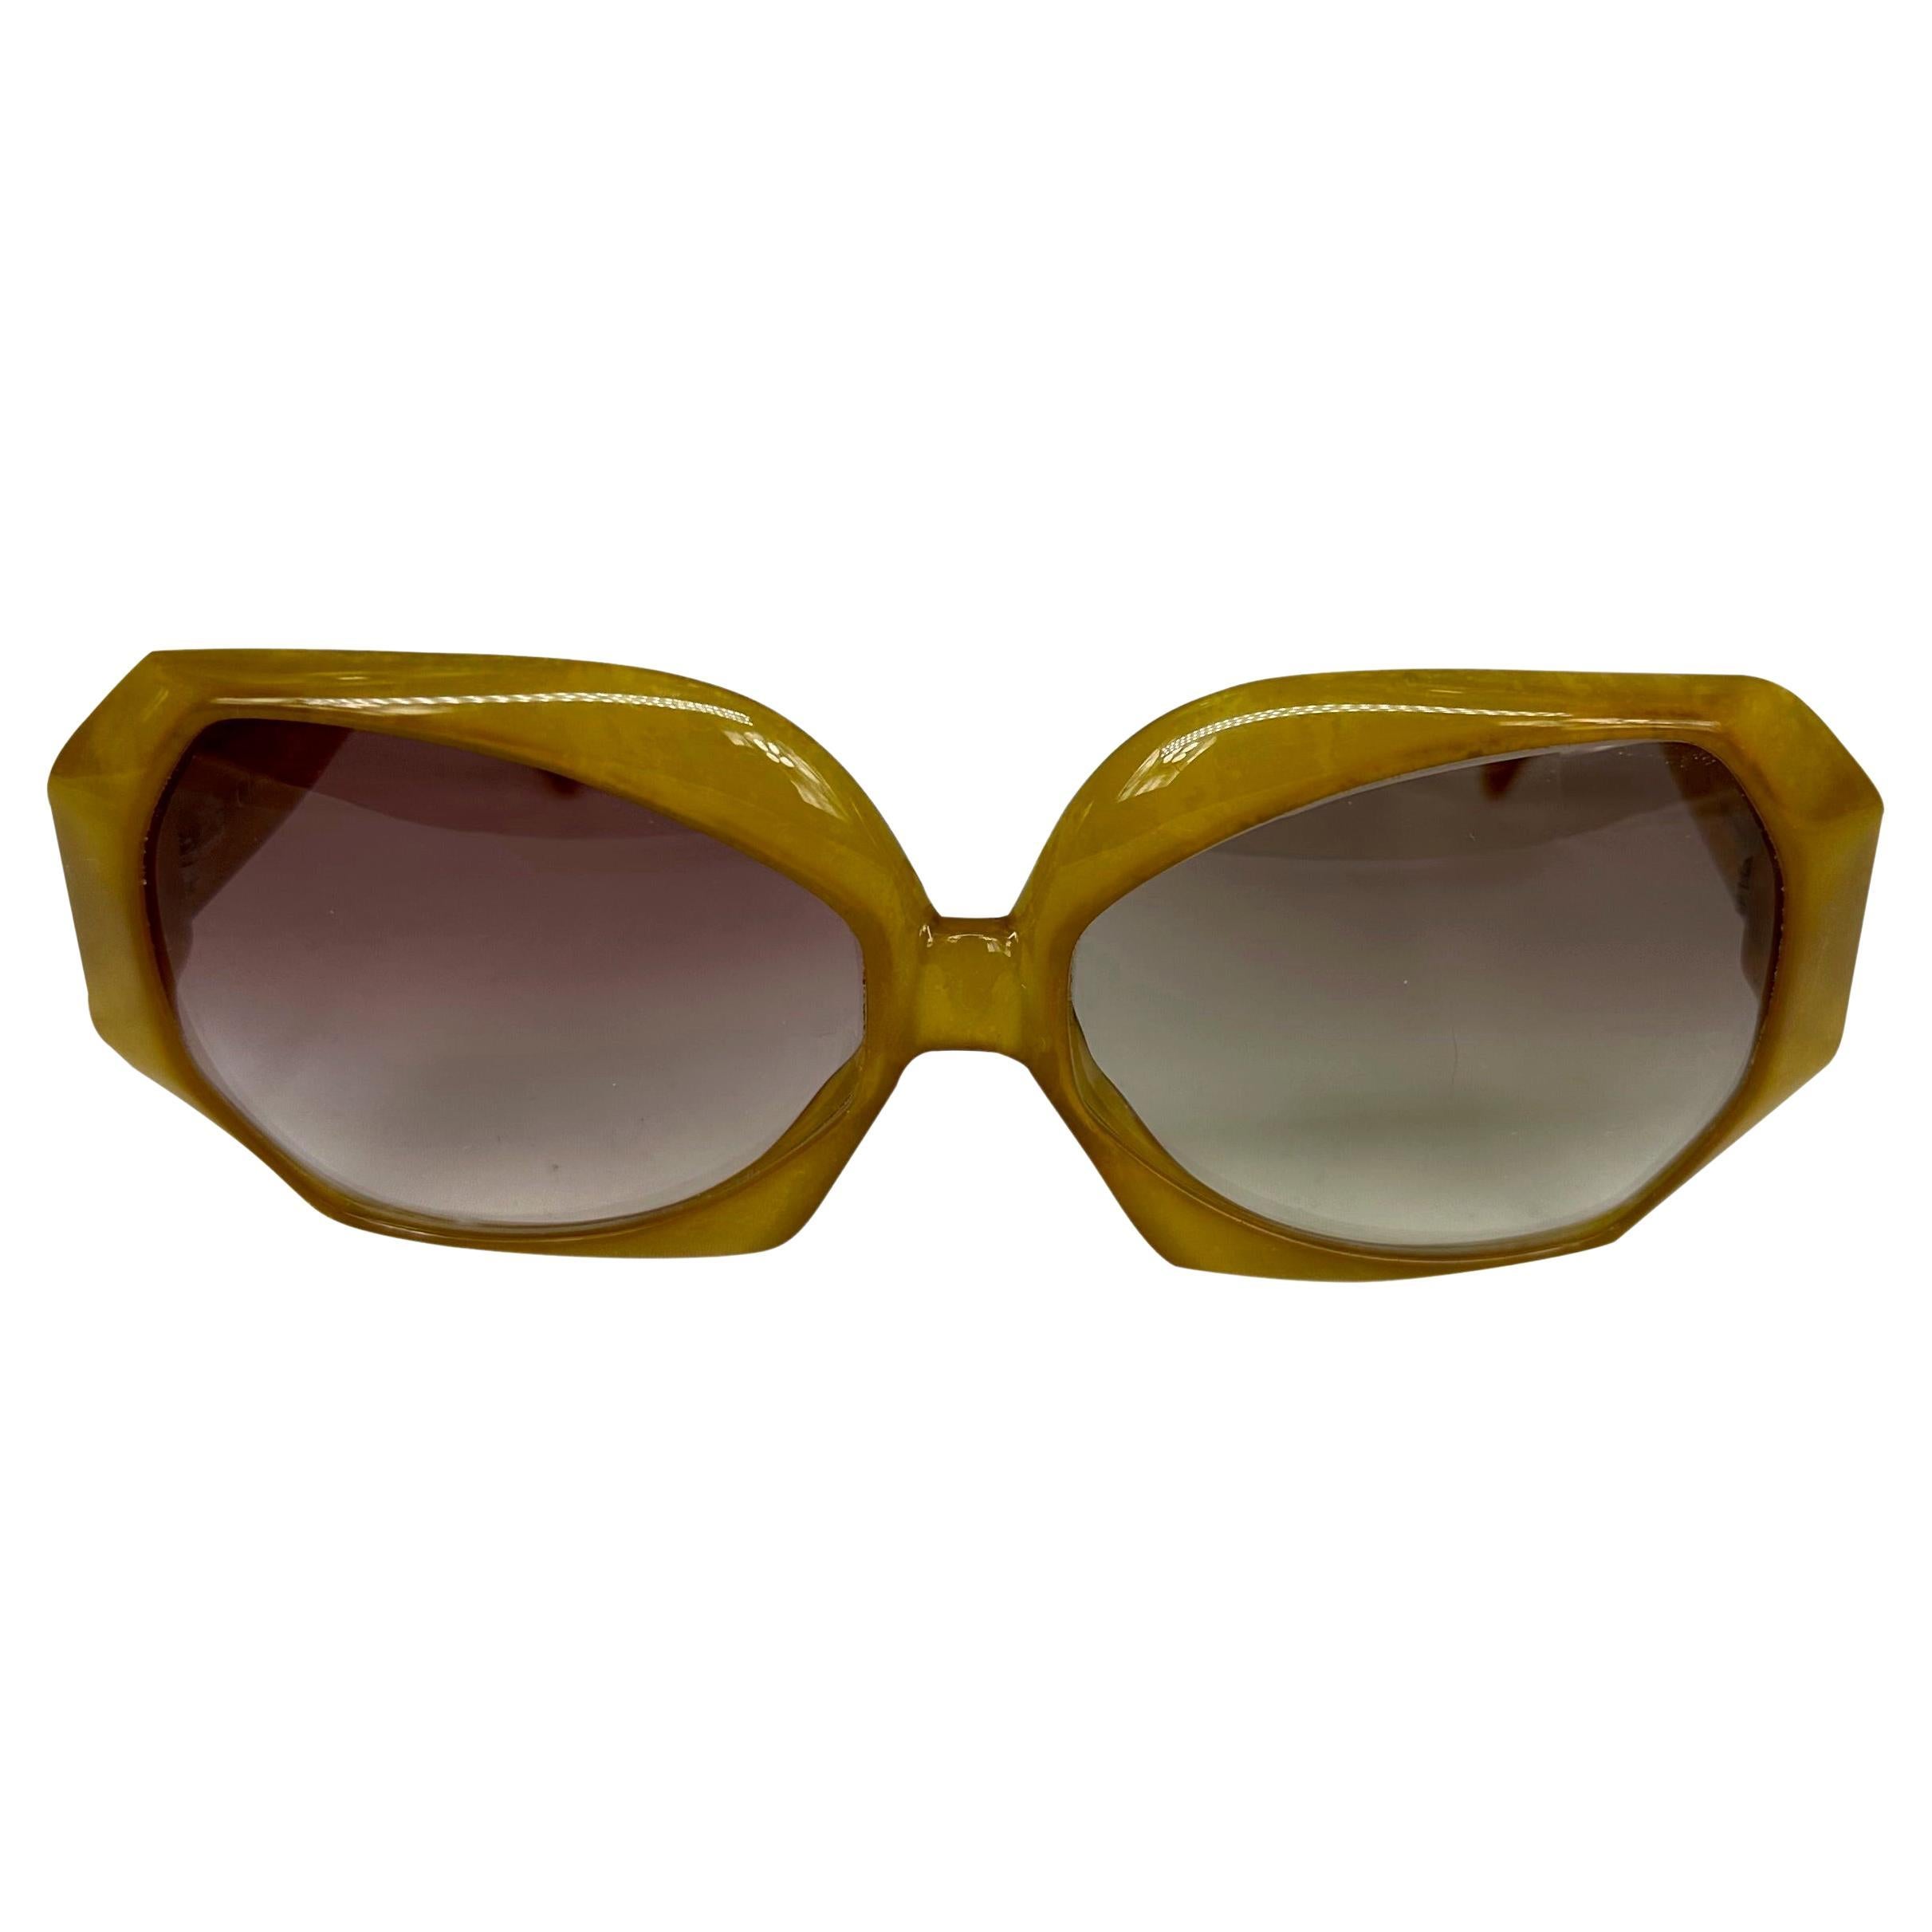 Ich präsentiere eine fabelhafte Sonnenbrille in Übergröße von Christian Dior. Diese honigfarbene Sonnenbrille aus den 1980er Jahren hat einen übergroßen achteckigen Rahmen und ist mit einem Retro-